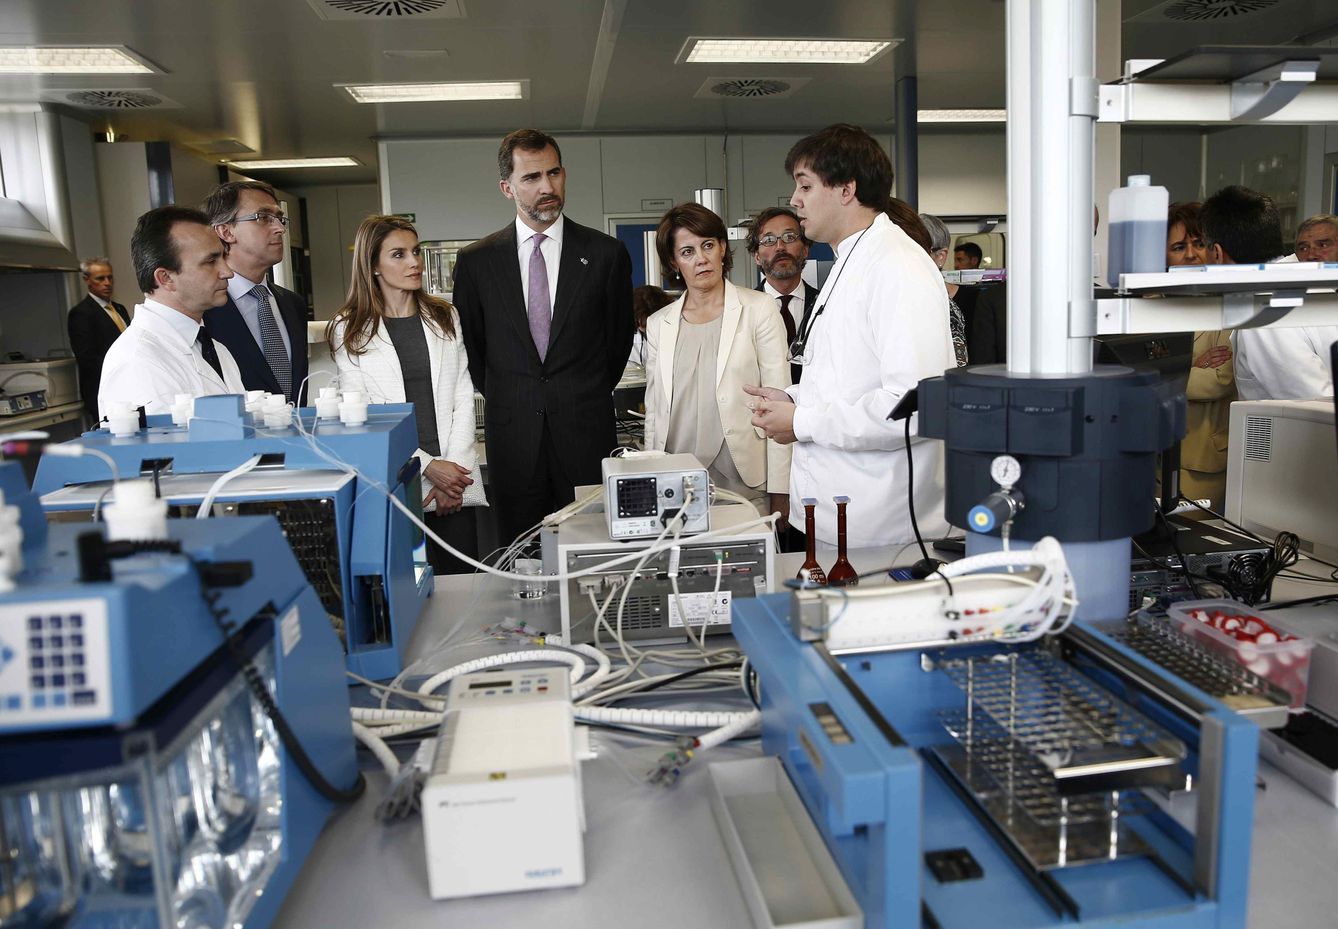 Los Reyes de España, durante una visita a una compañía farmaceútica. (EFE)